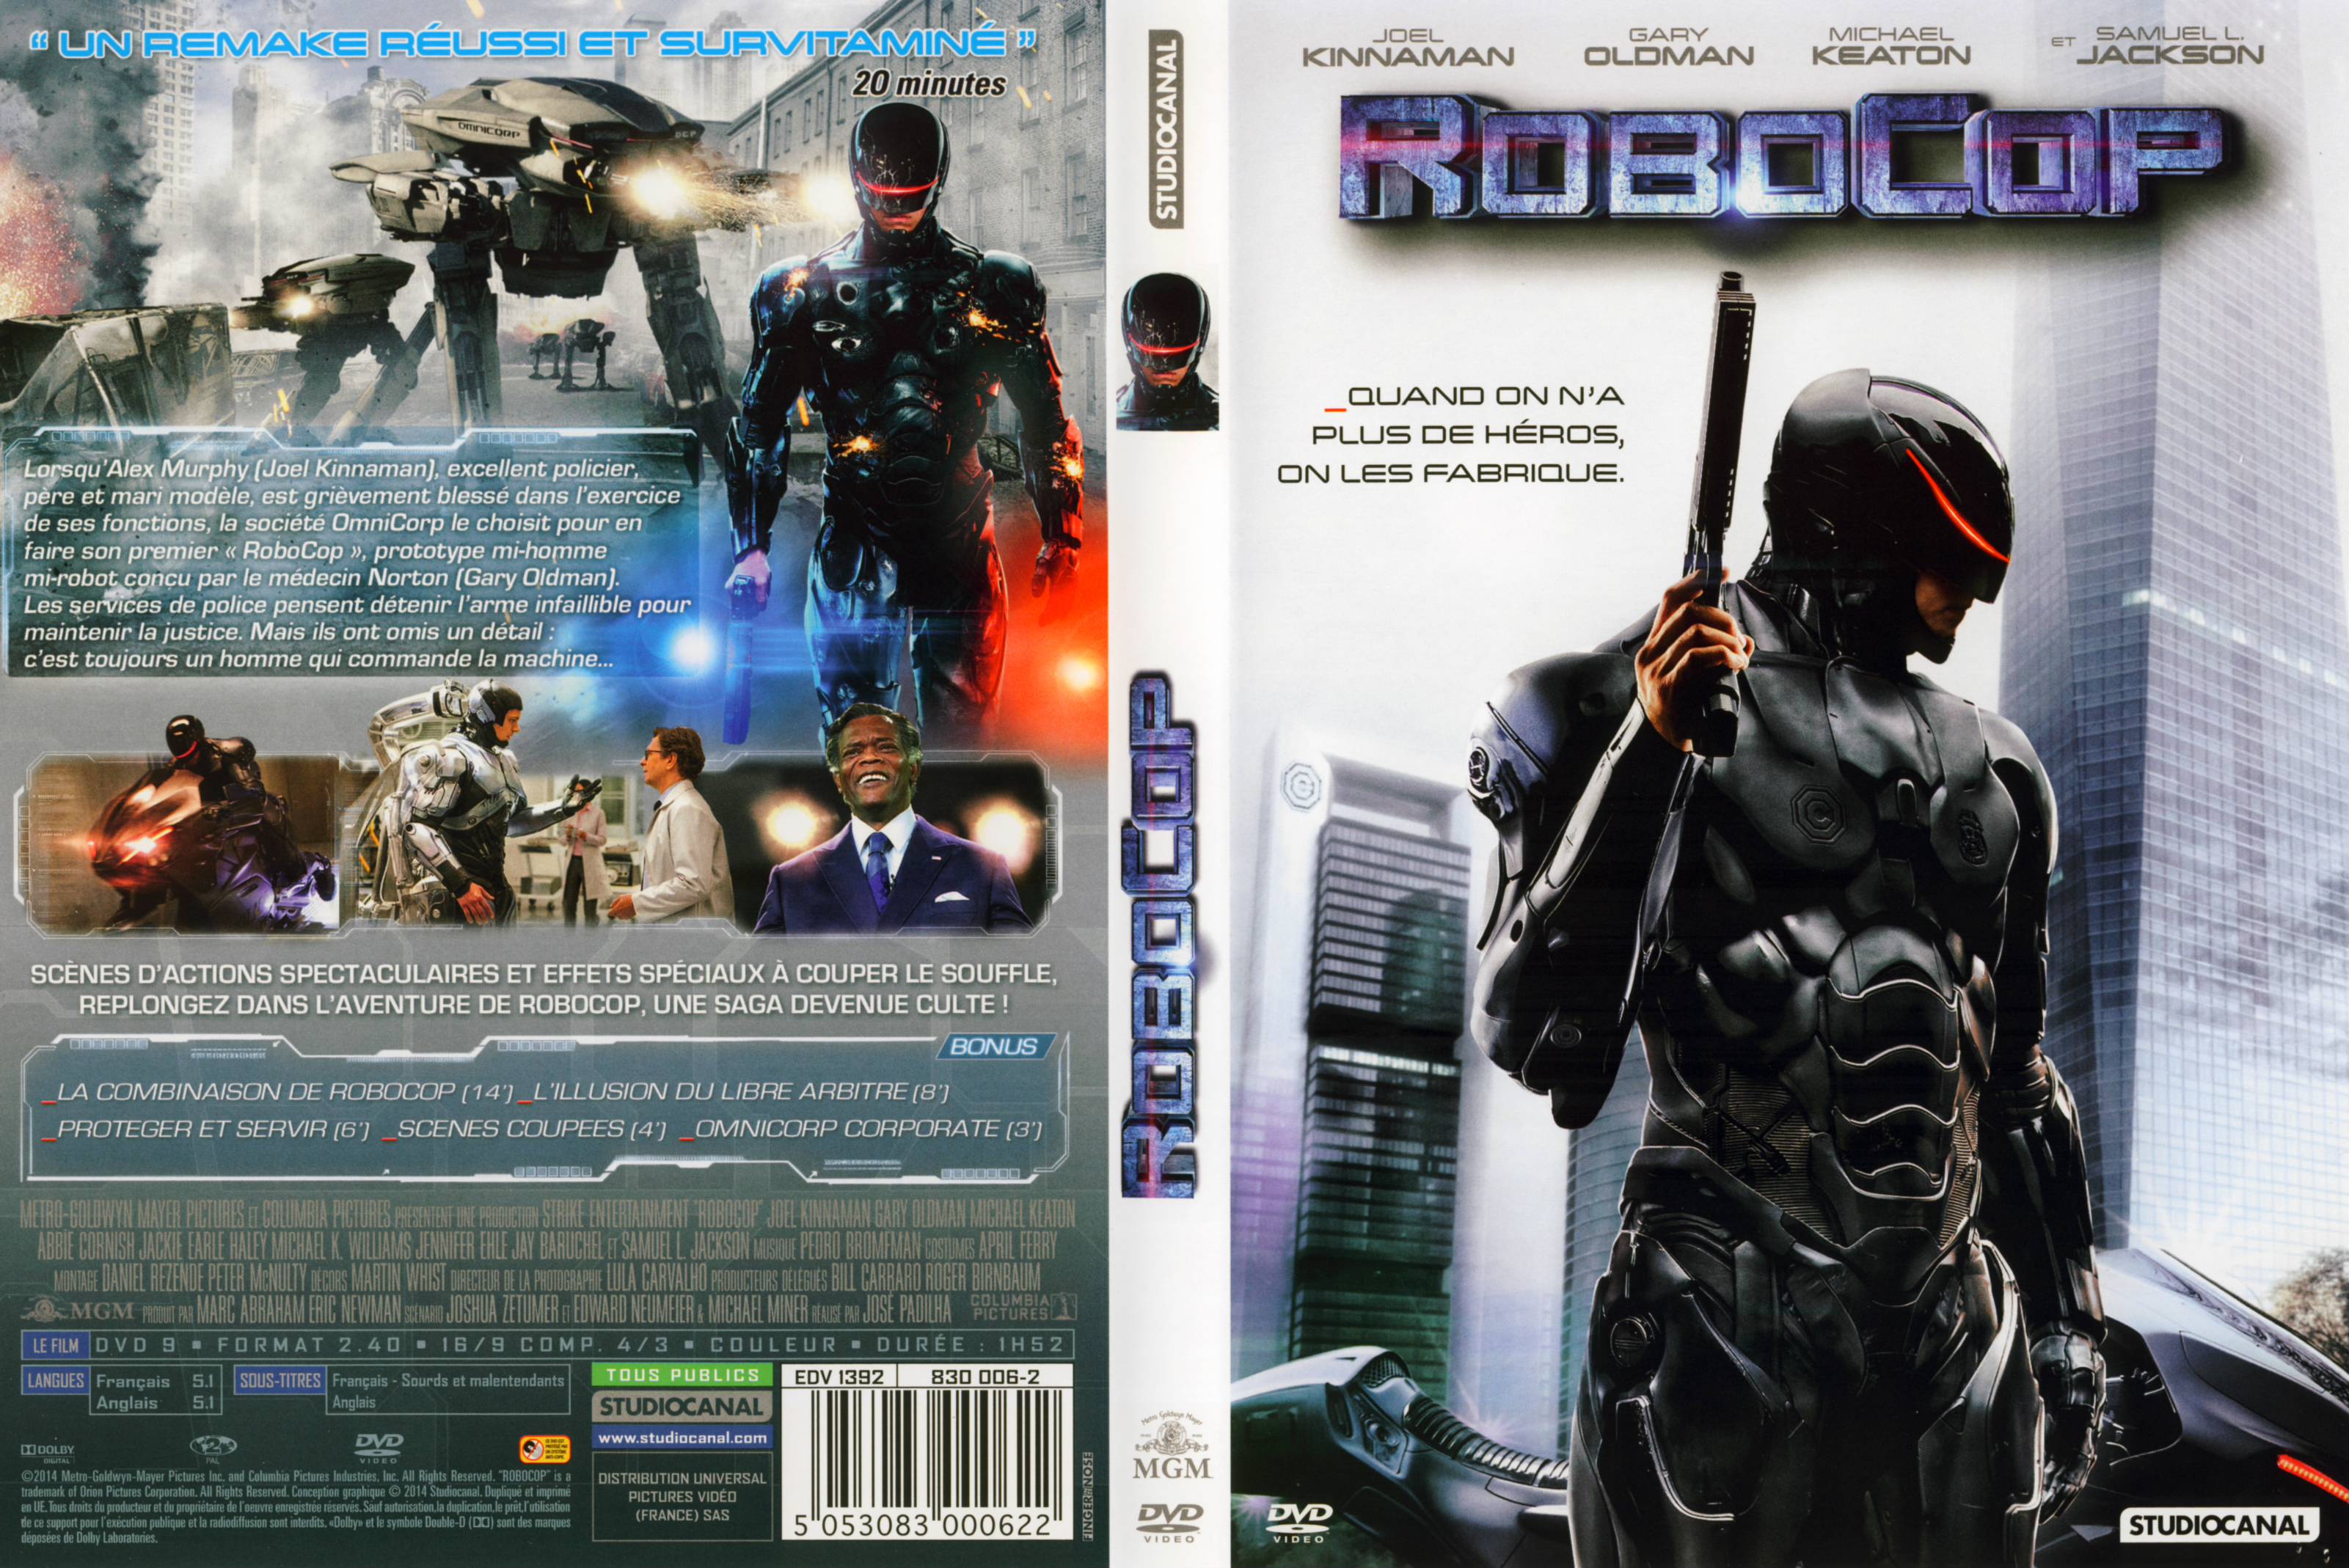 Jaquette DVD Robocop (2014)